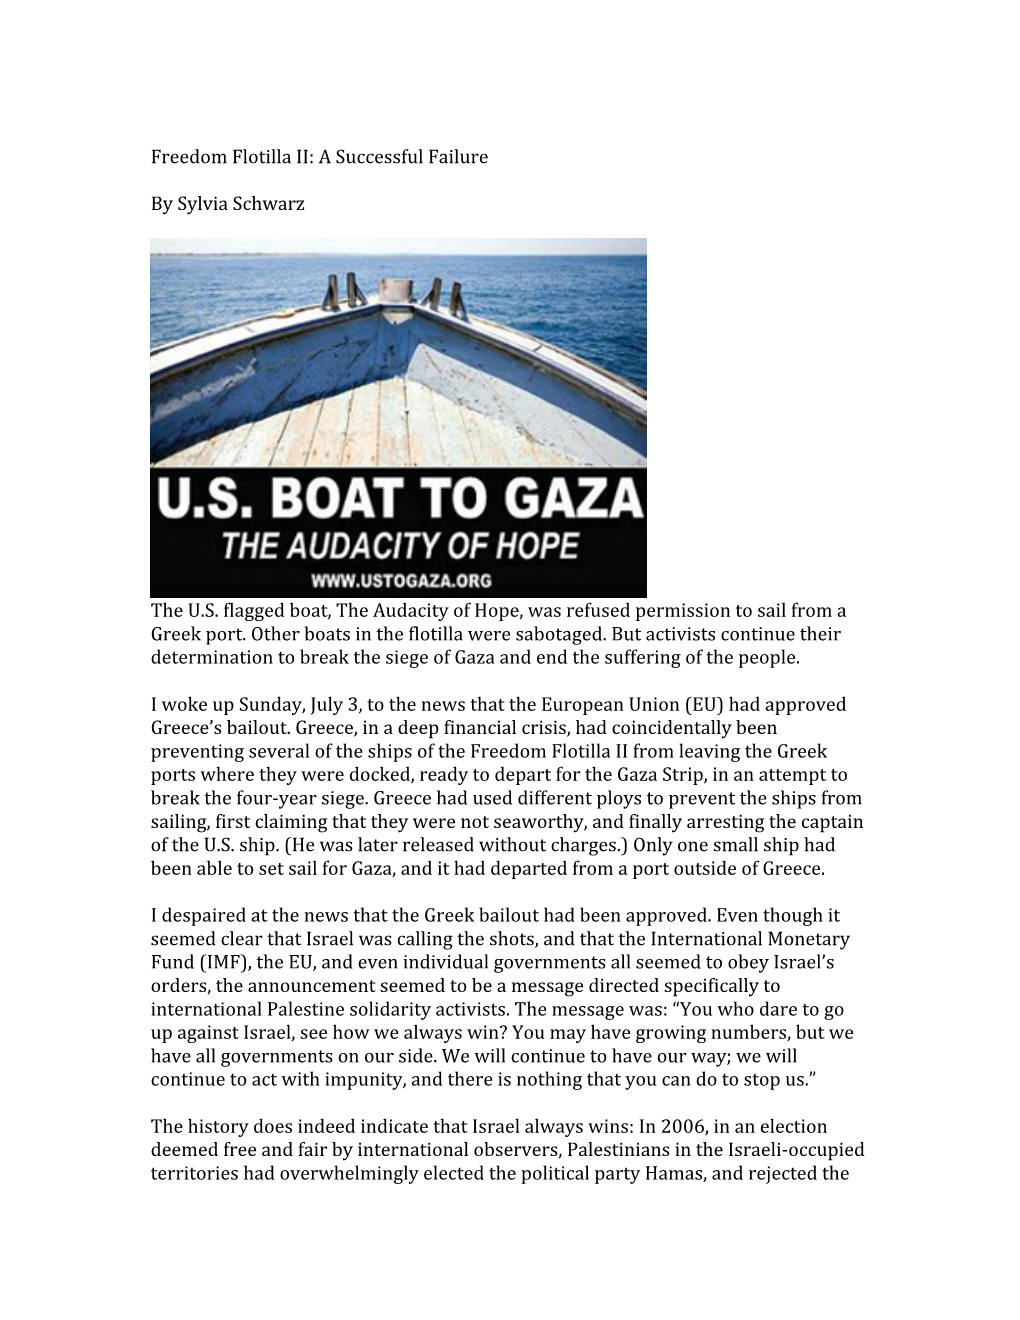 Freedom Flotilla II: a Successful Failure by Sylvia Schwarz the U.S